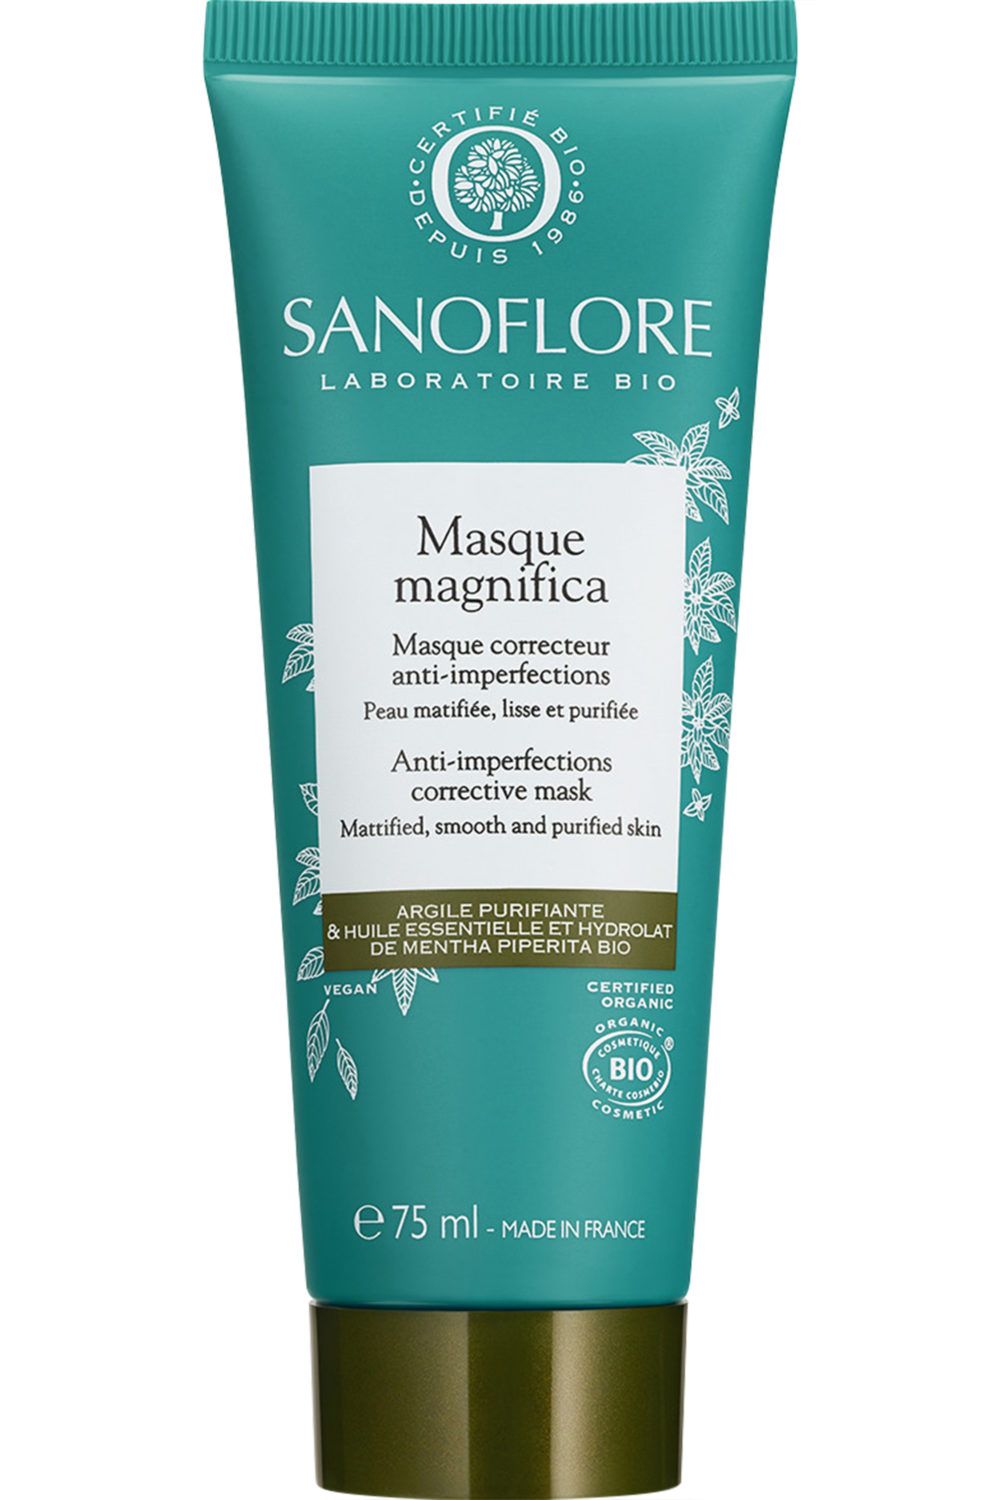 Sanoflore - Masque Magnifica